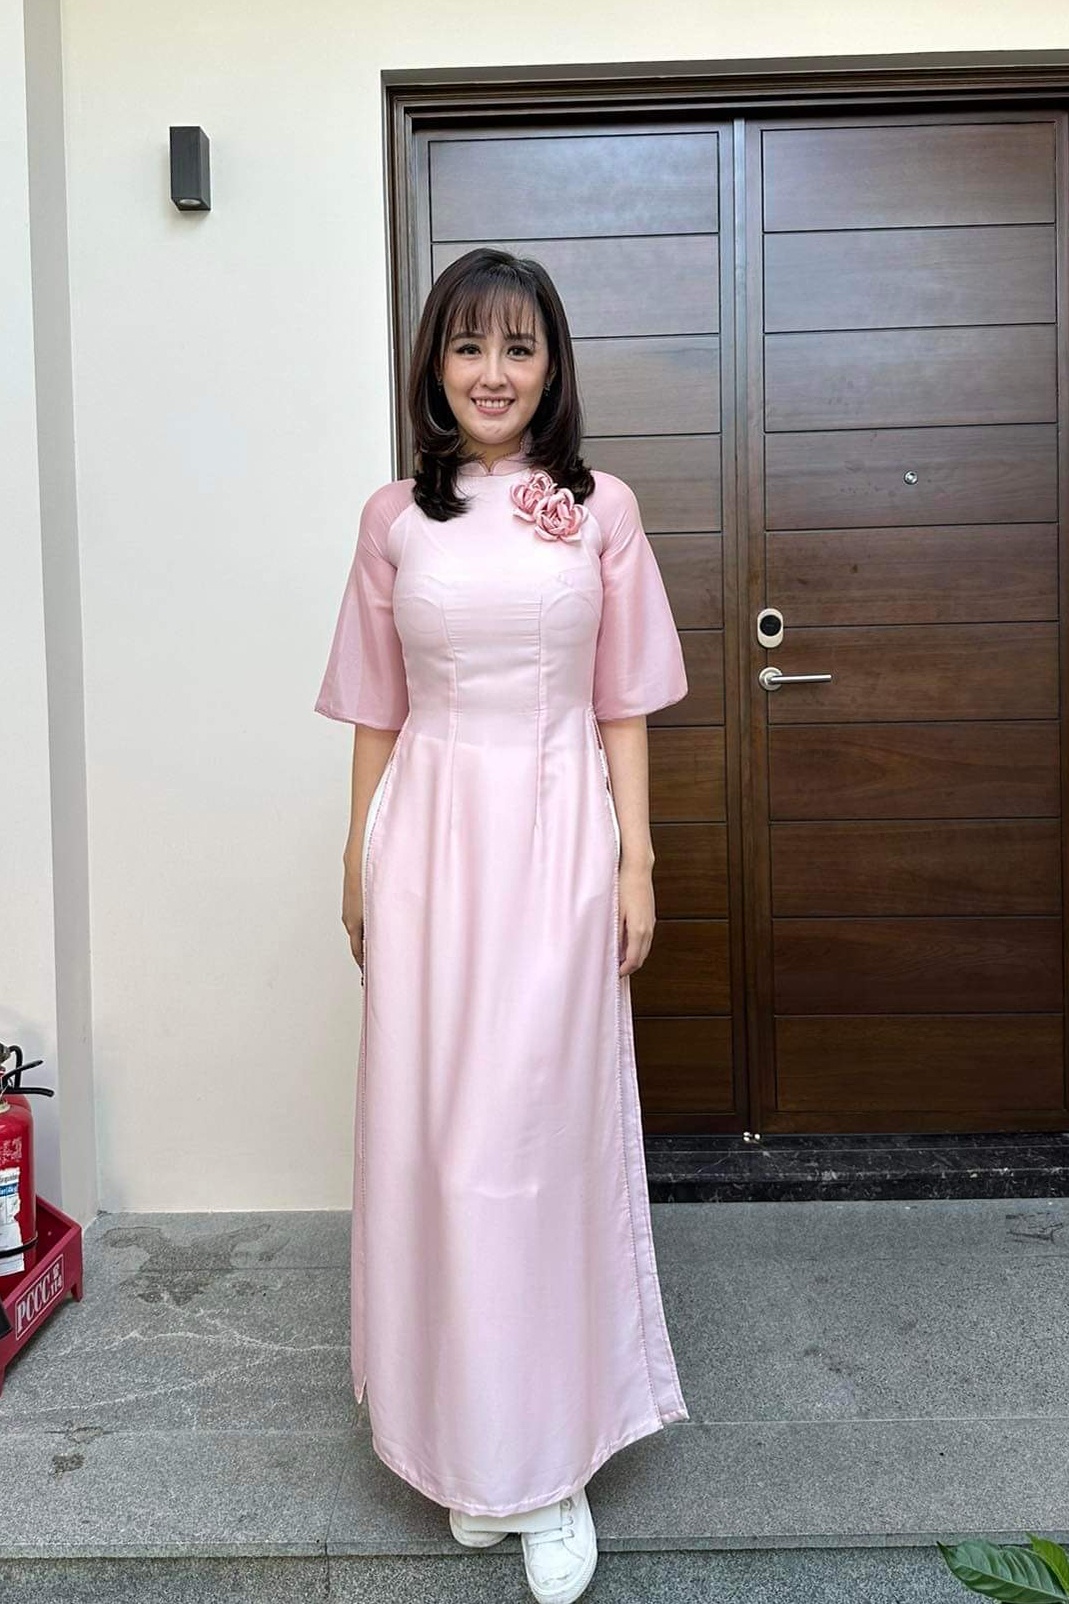 Hoa hậu Mai Phương Thúy xinh đẹp trong lần đầu làm dâu phụ - Ảnh 4.